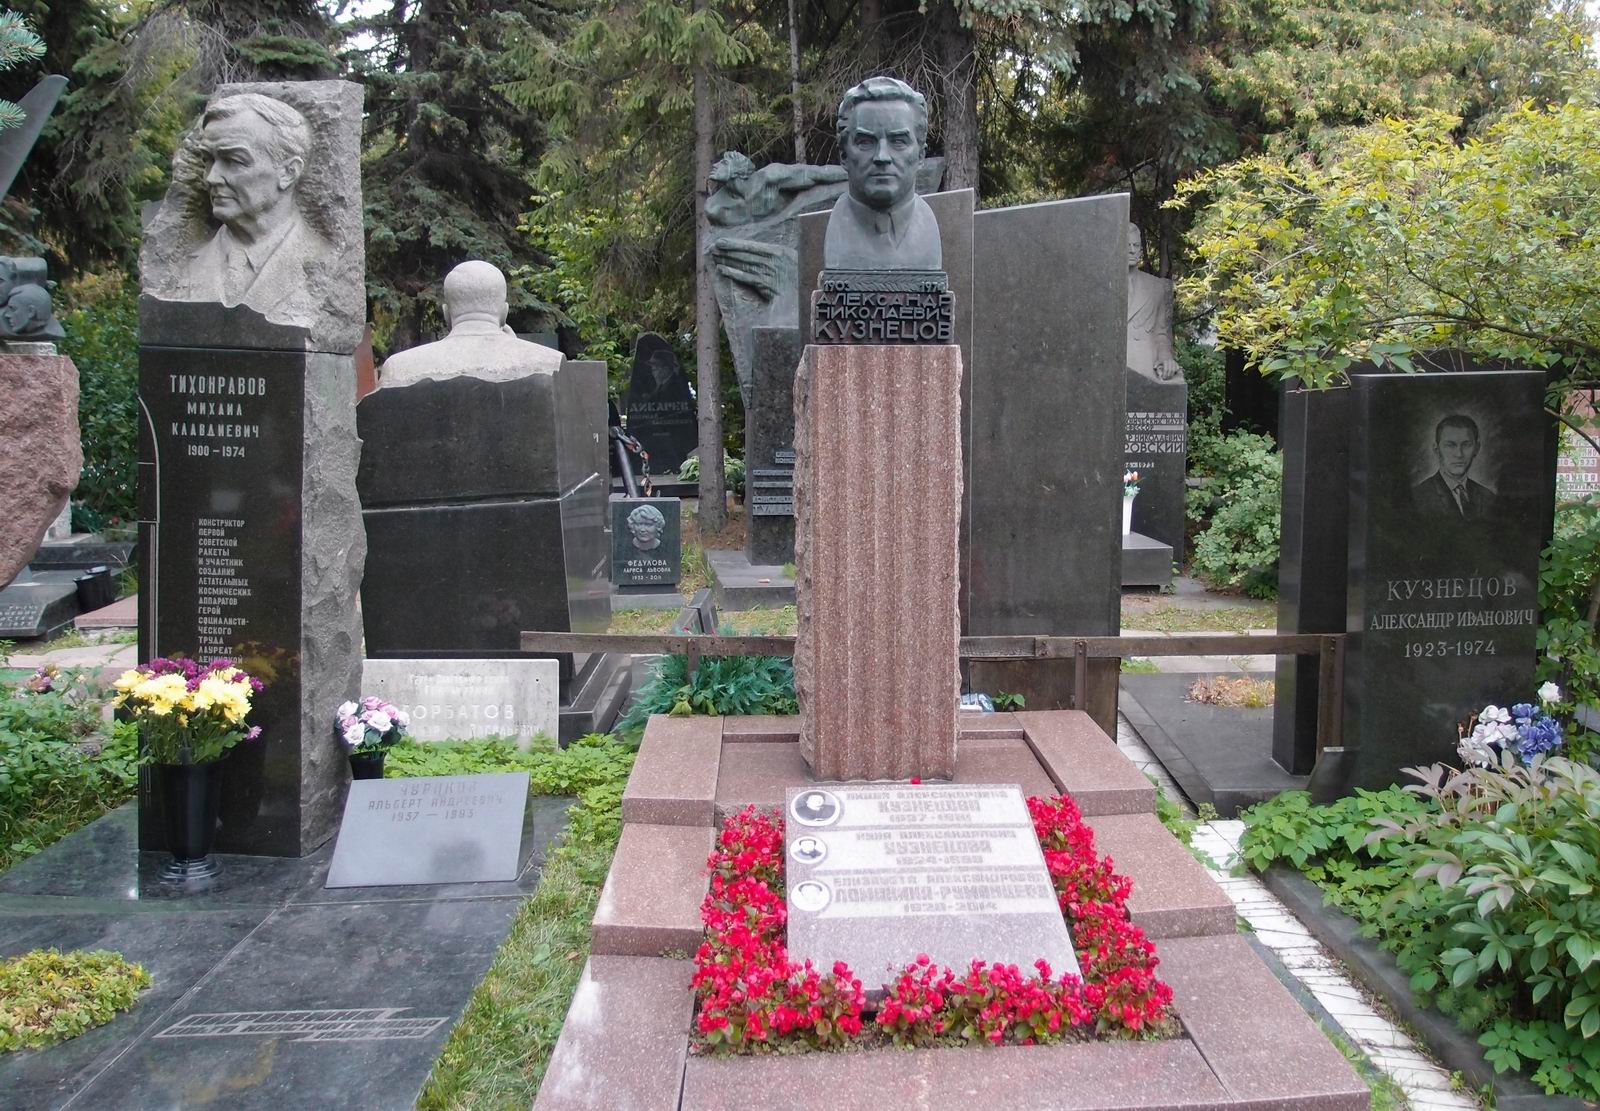 Памятник на могиле Кузнецова А.Н. (1903-1974), на Новодевичьем кладбище (7-8-17).